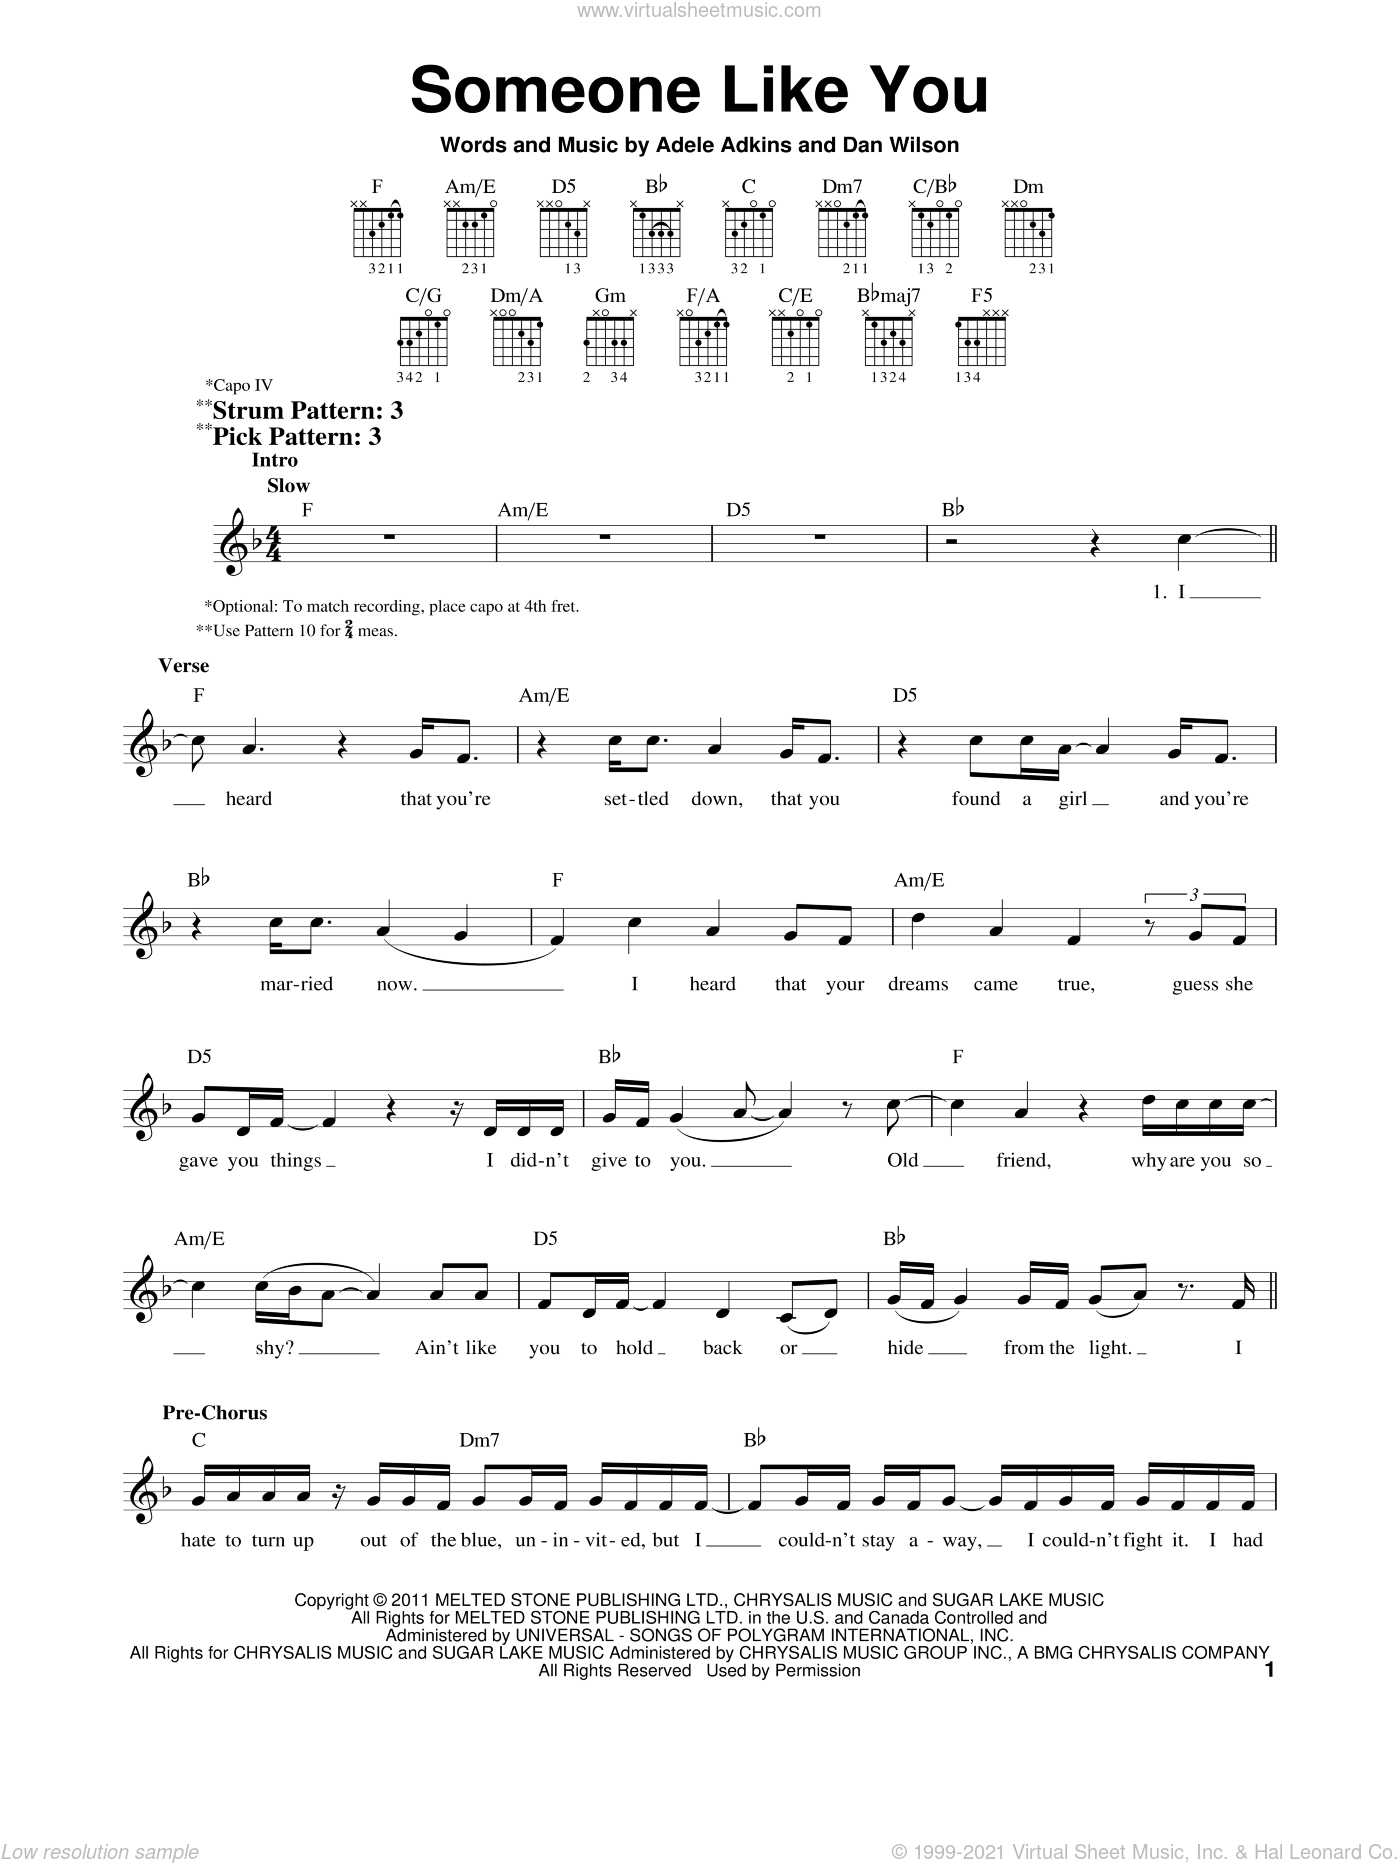 saludo Conquista junio Adele - Someone Like You sheet music for guitar solo (chords) v2